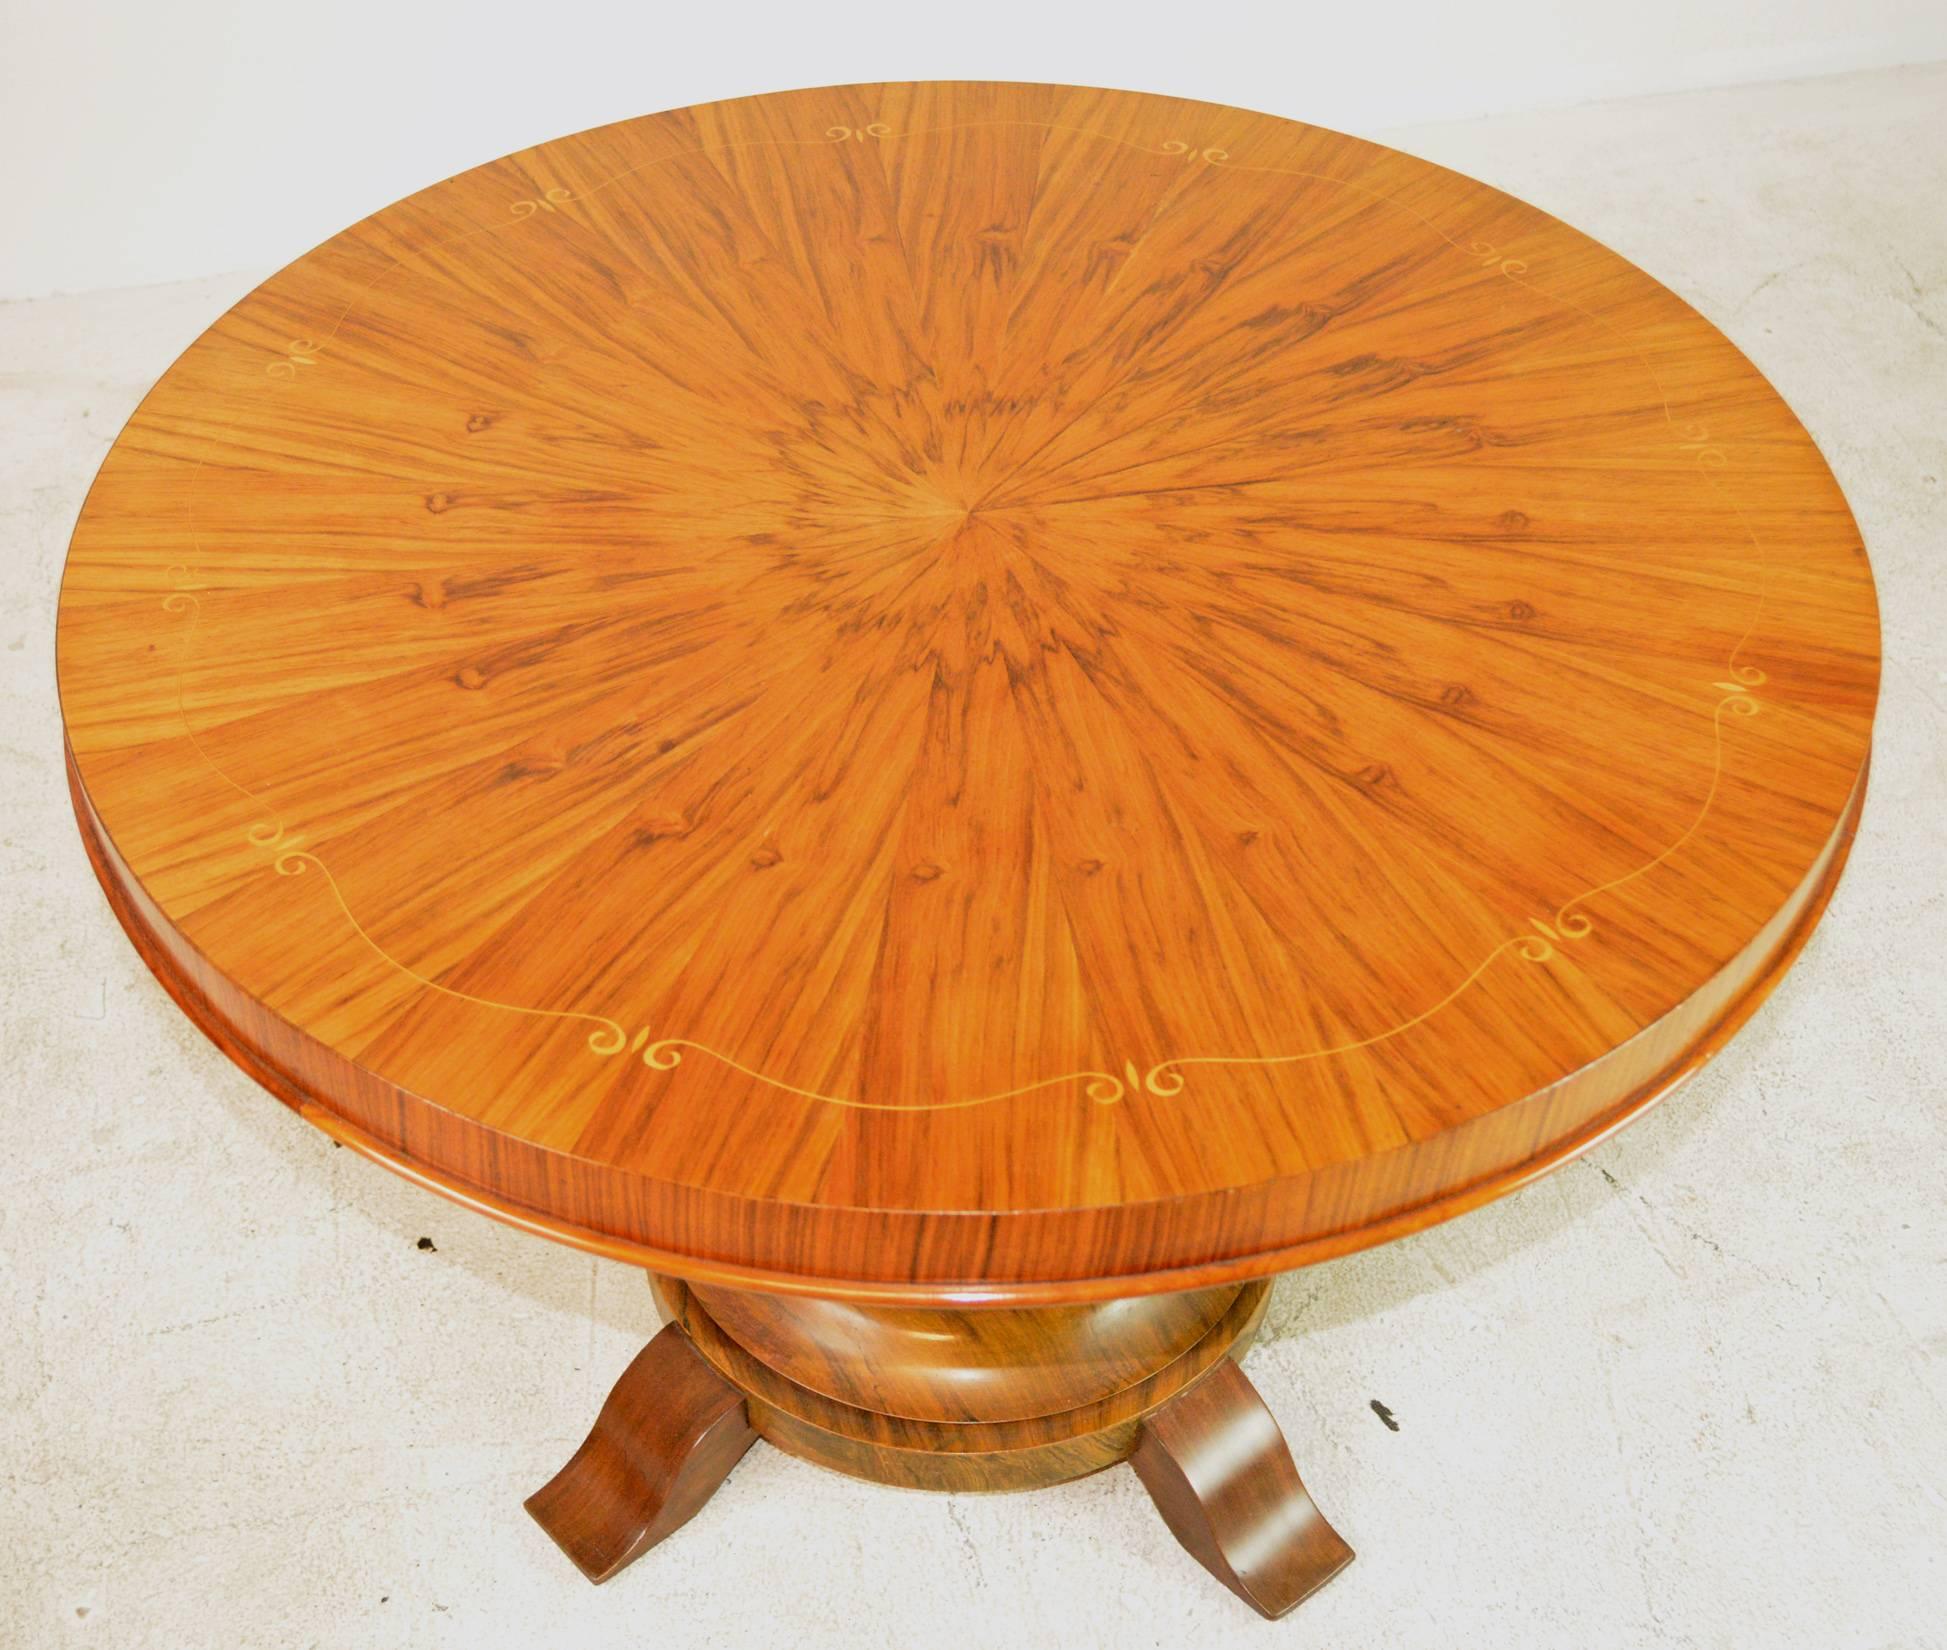 Table d'appoint Art Déco française avec incrustation de rubans sur un plateau en placage radial dans le style de Jules Leleu.